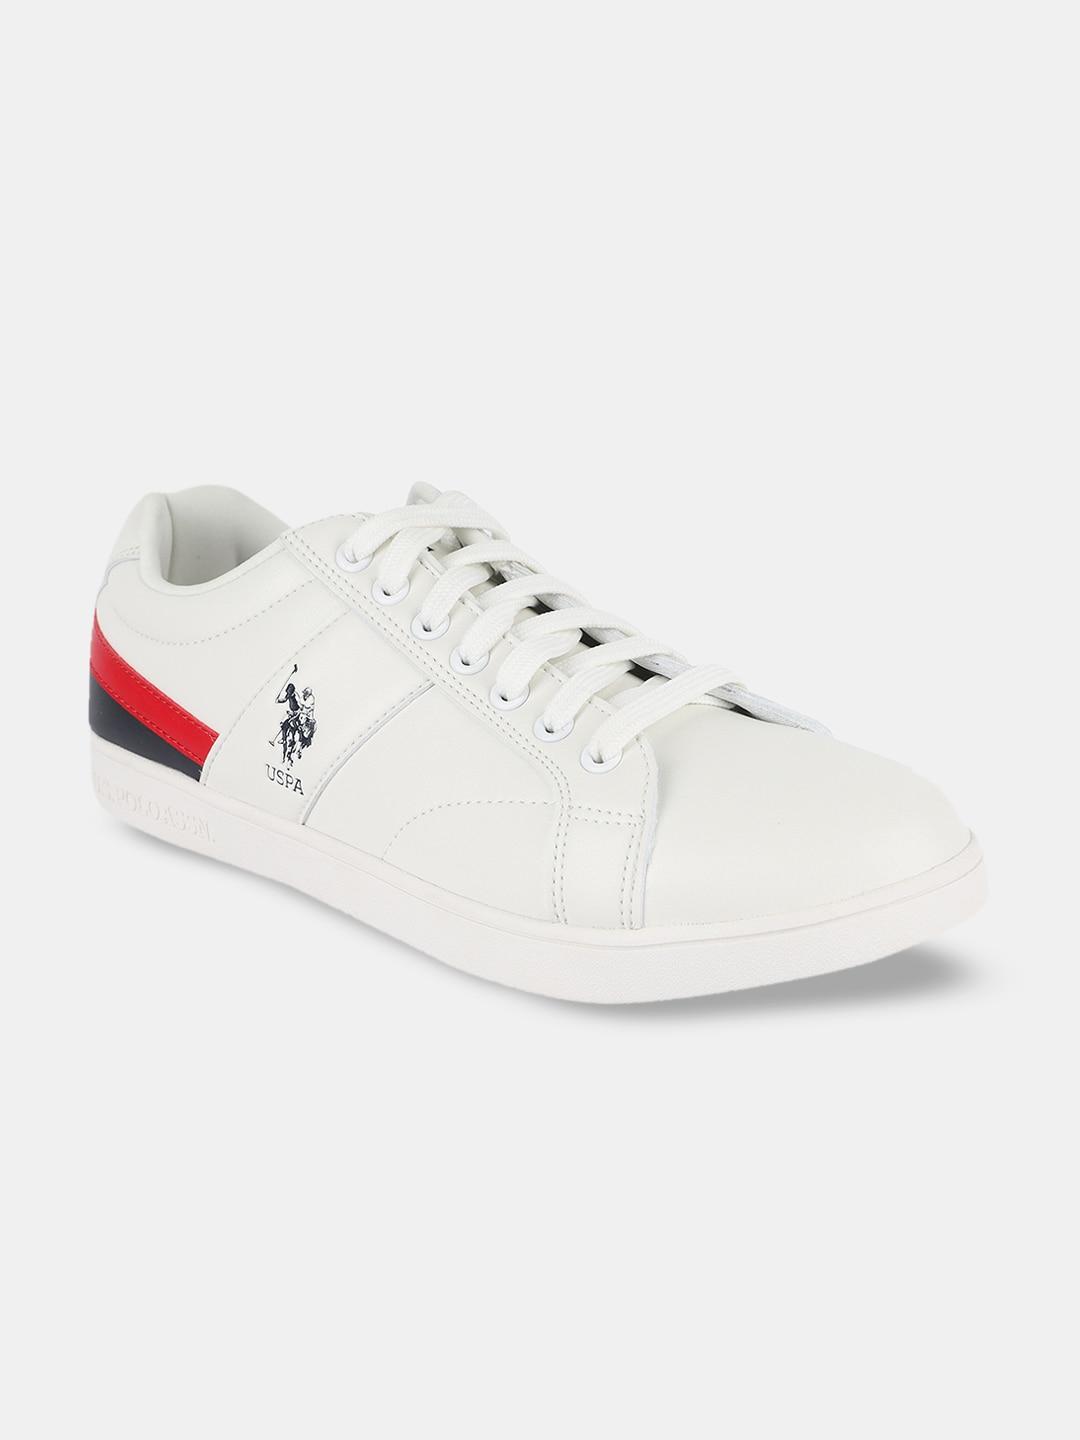 u-s-polo-assn-men-off-white-pu-sneakers